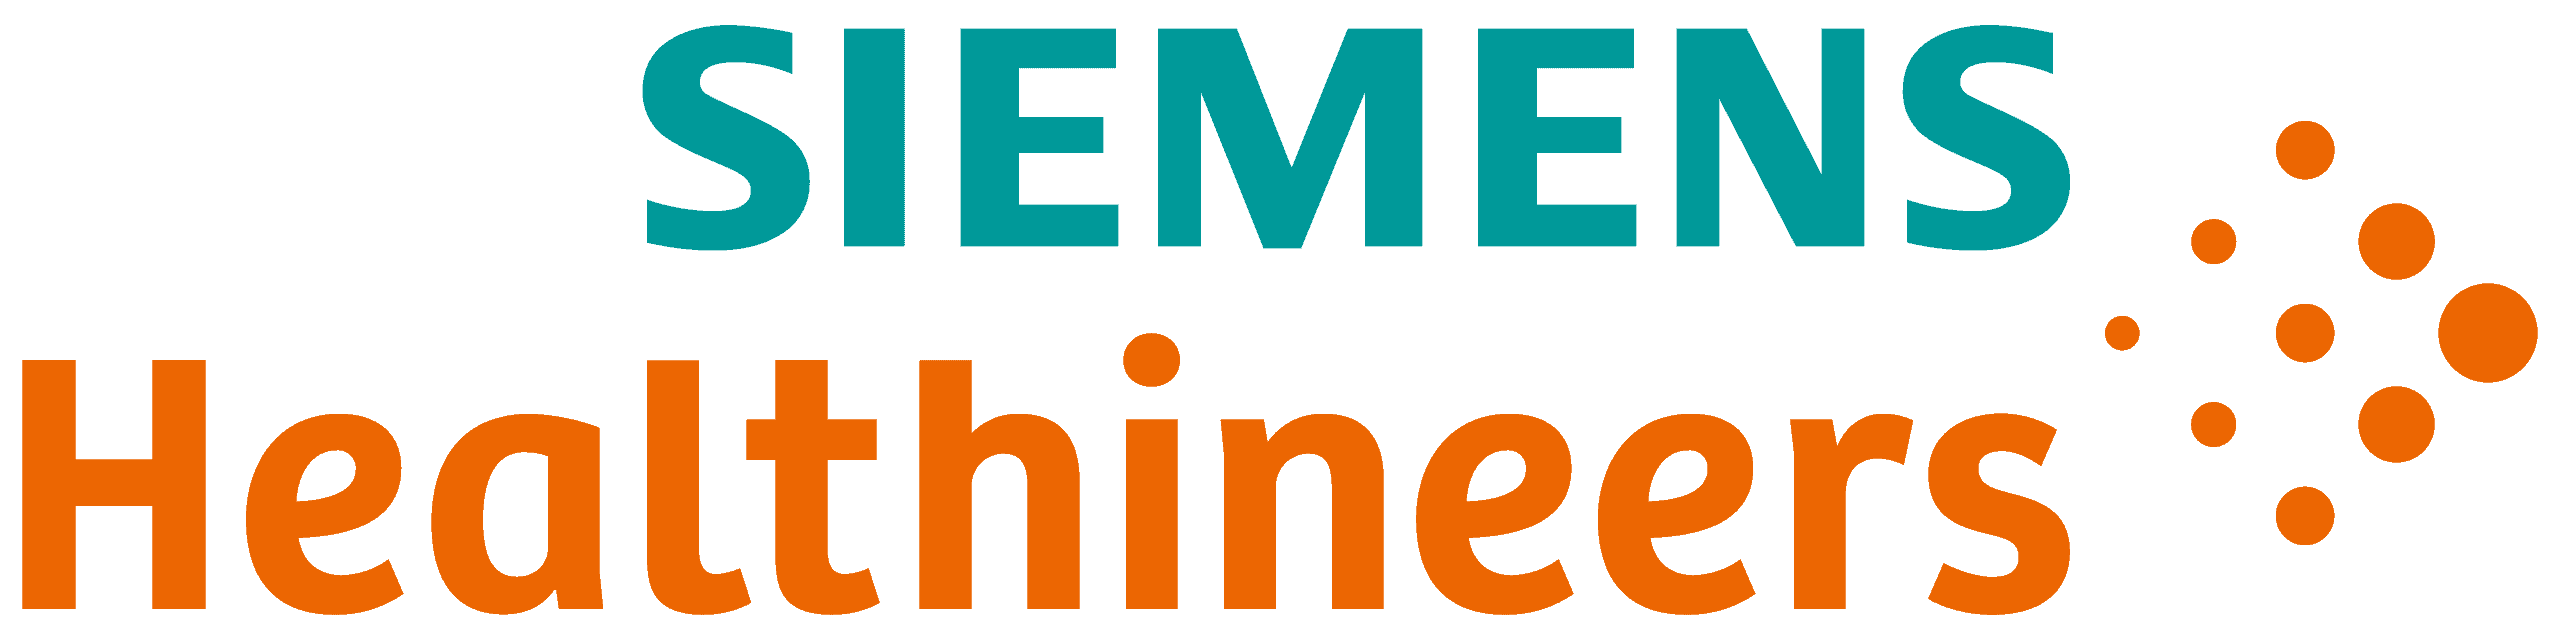 Siemens Healthineers - Oncovalue